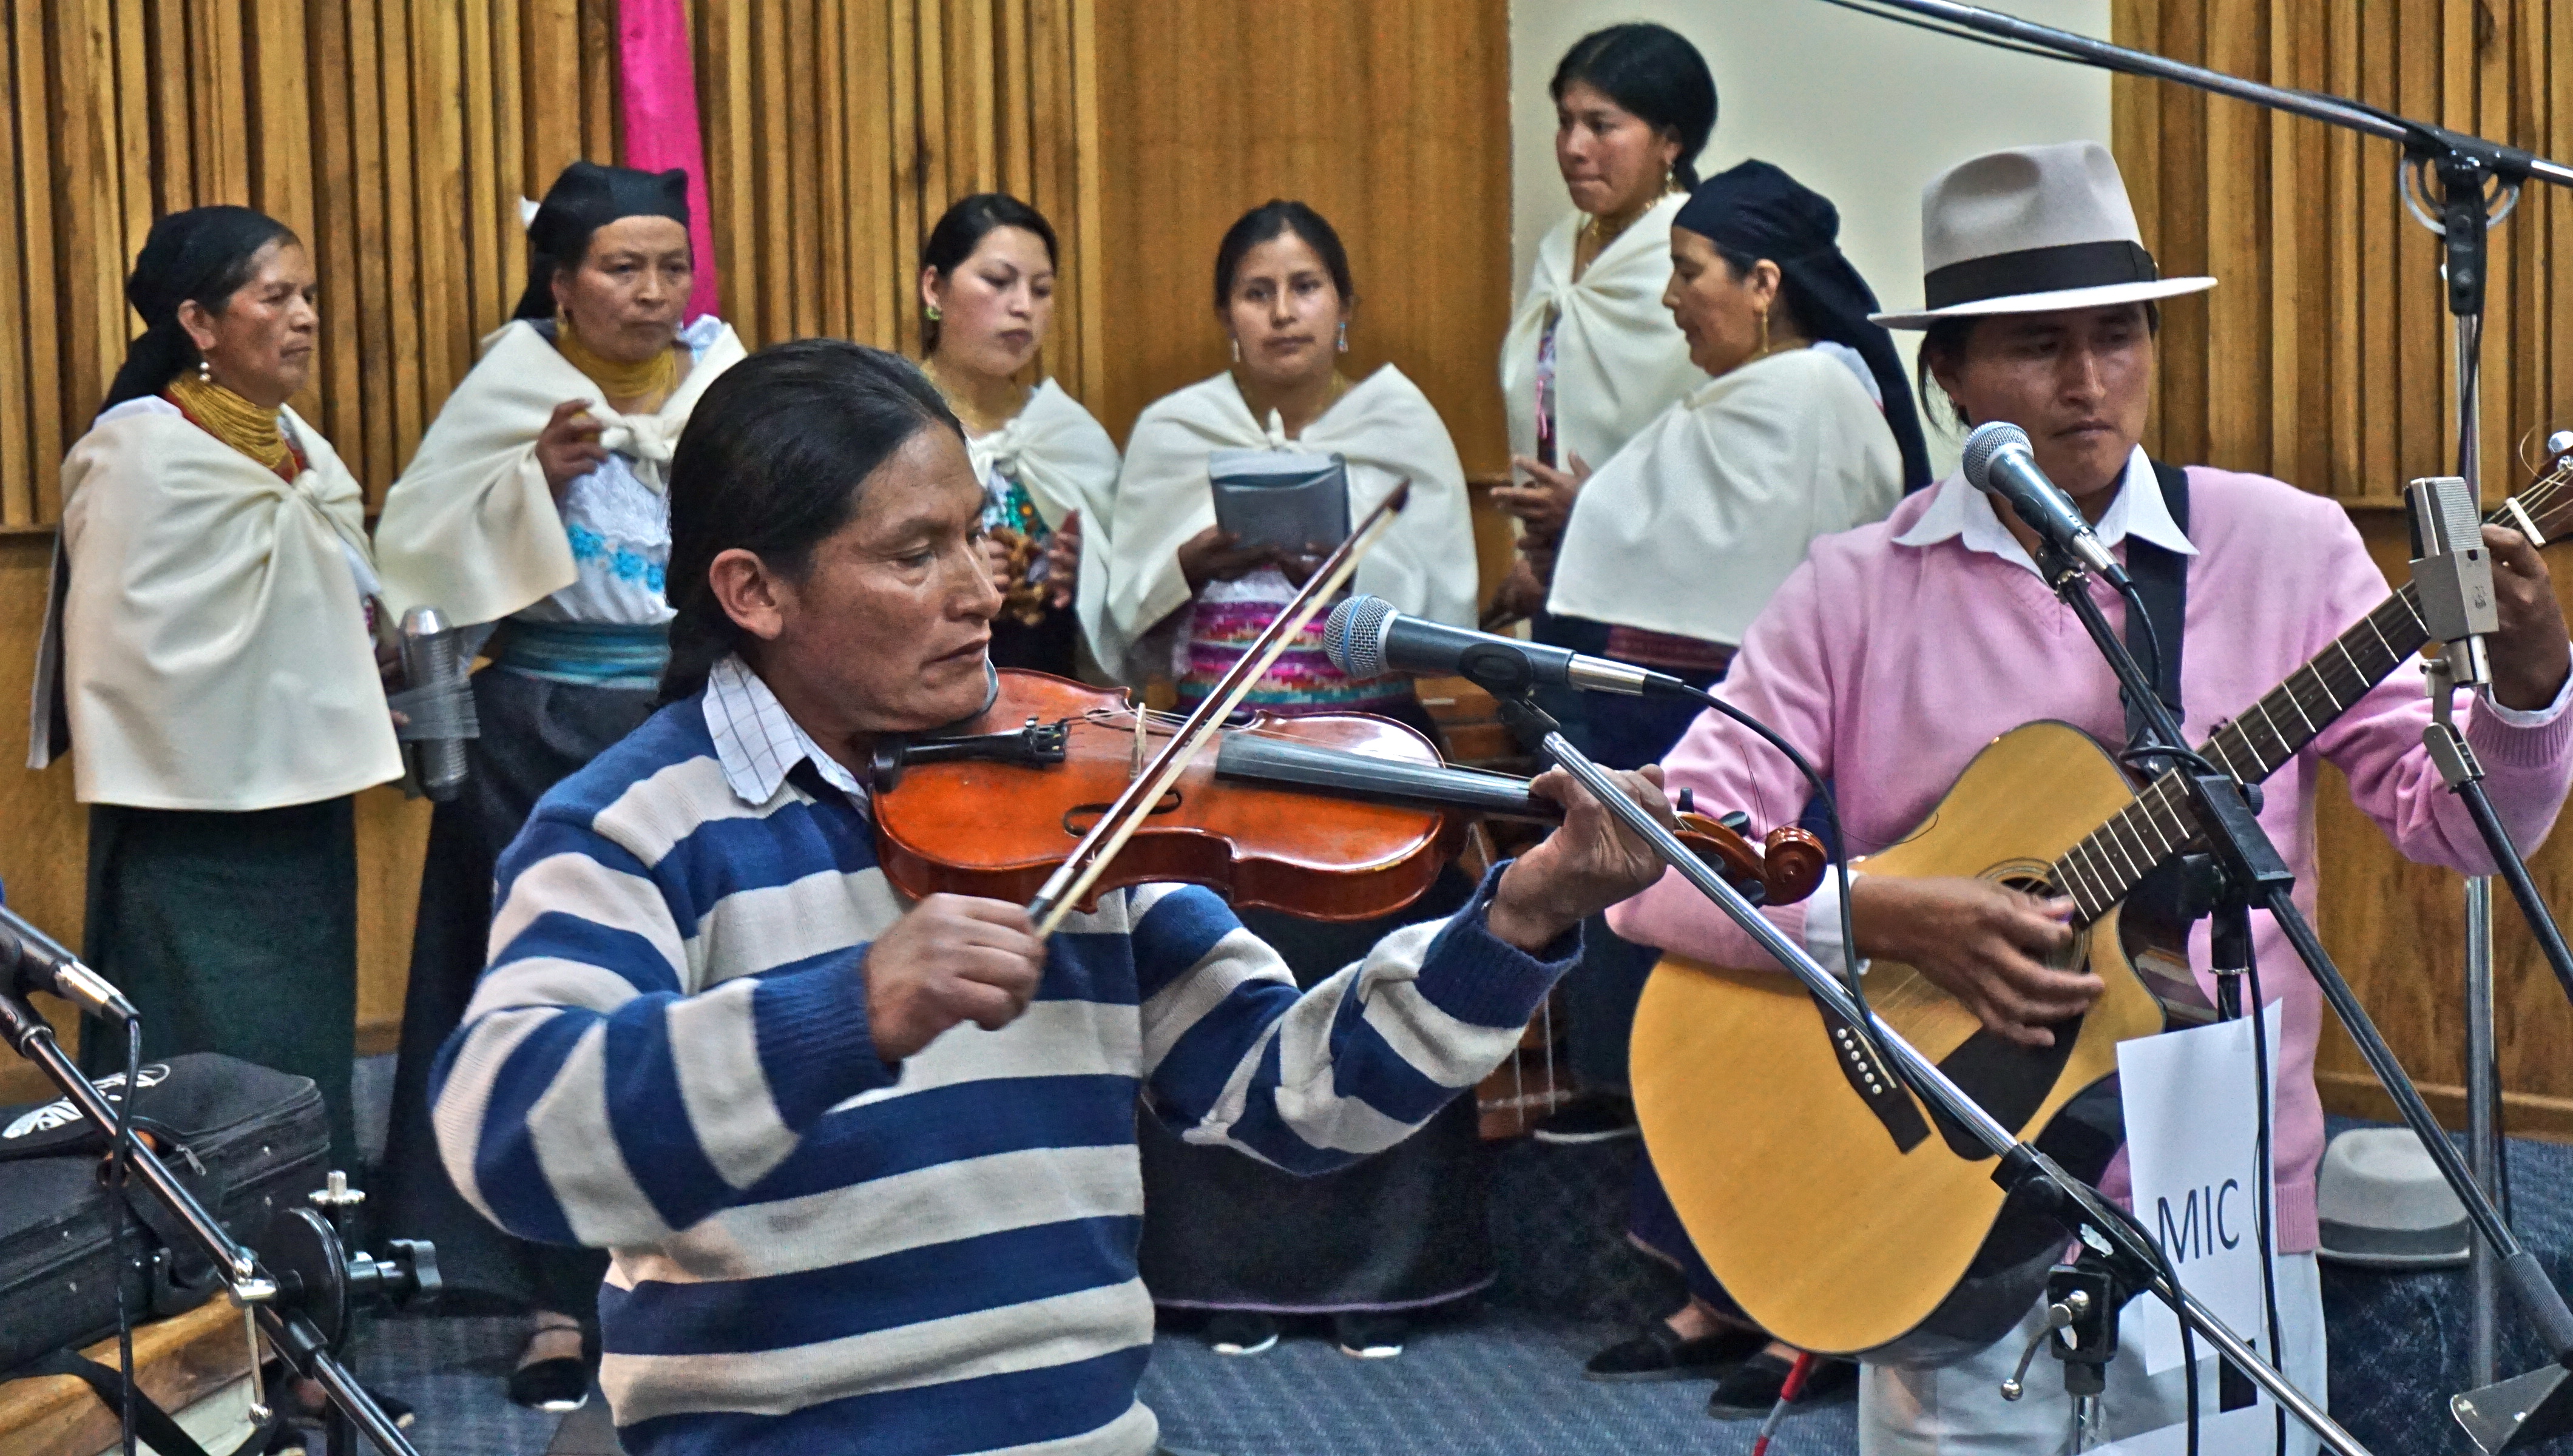 A Quichua band and choir provides entertainment.